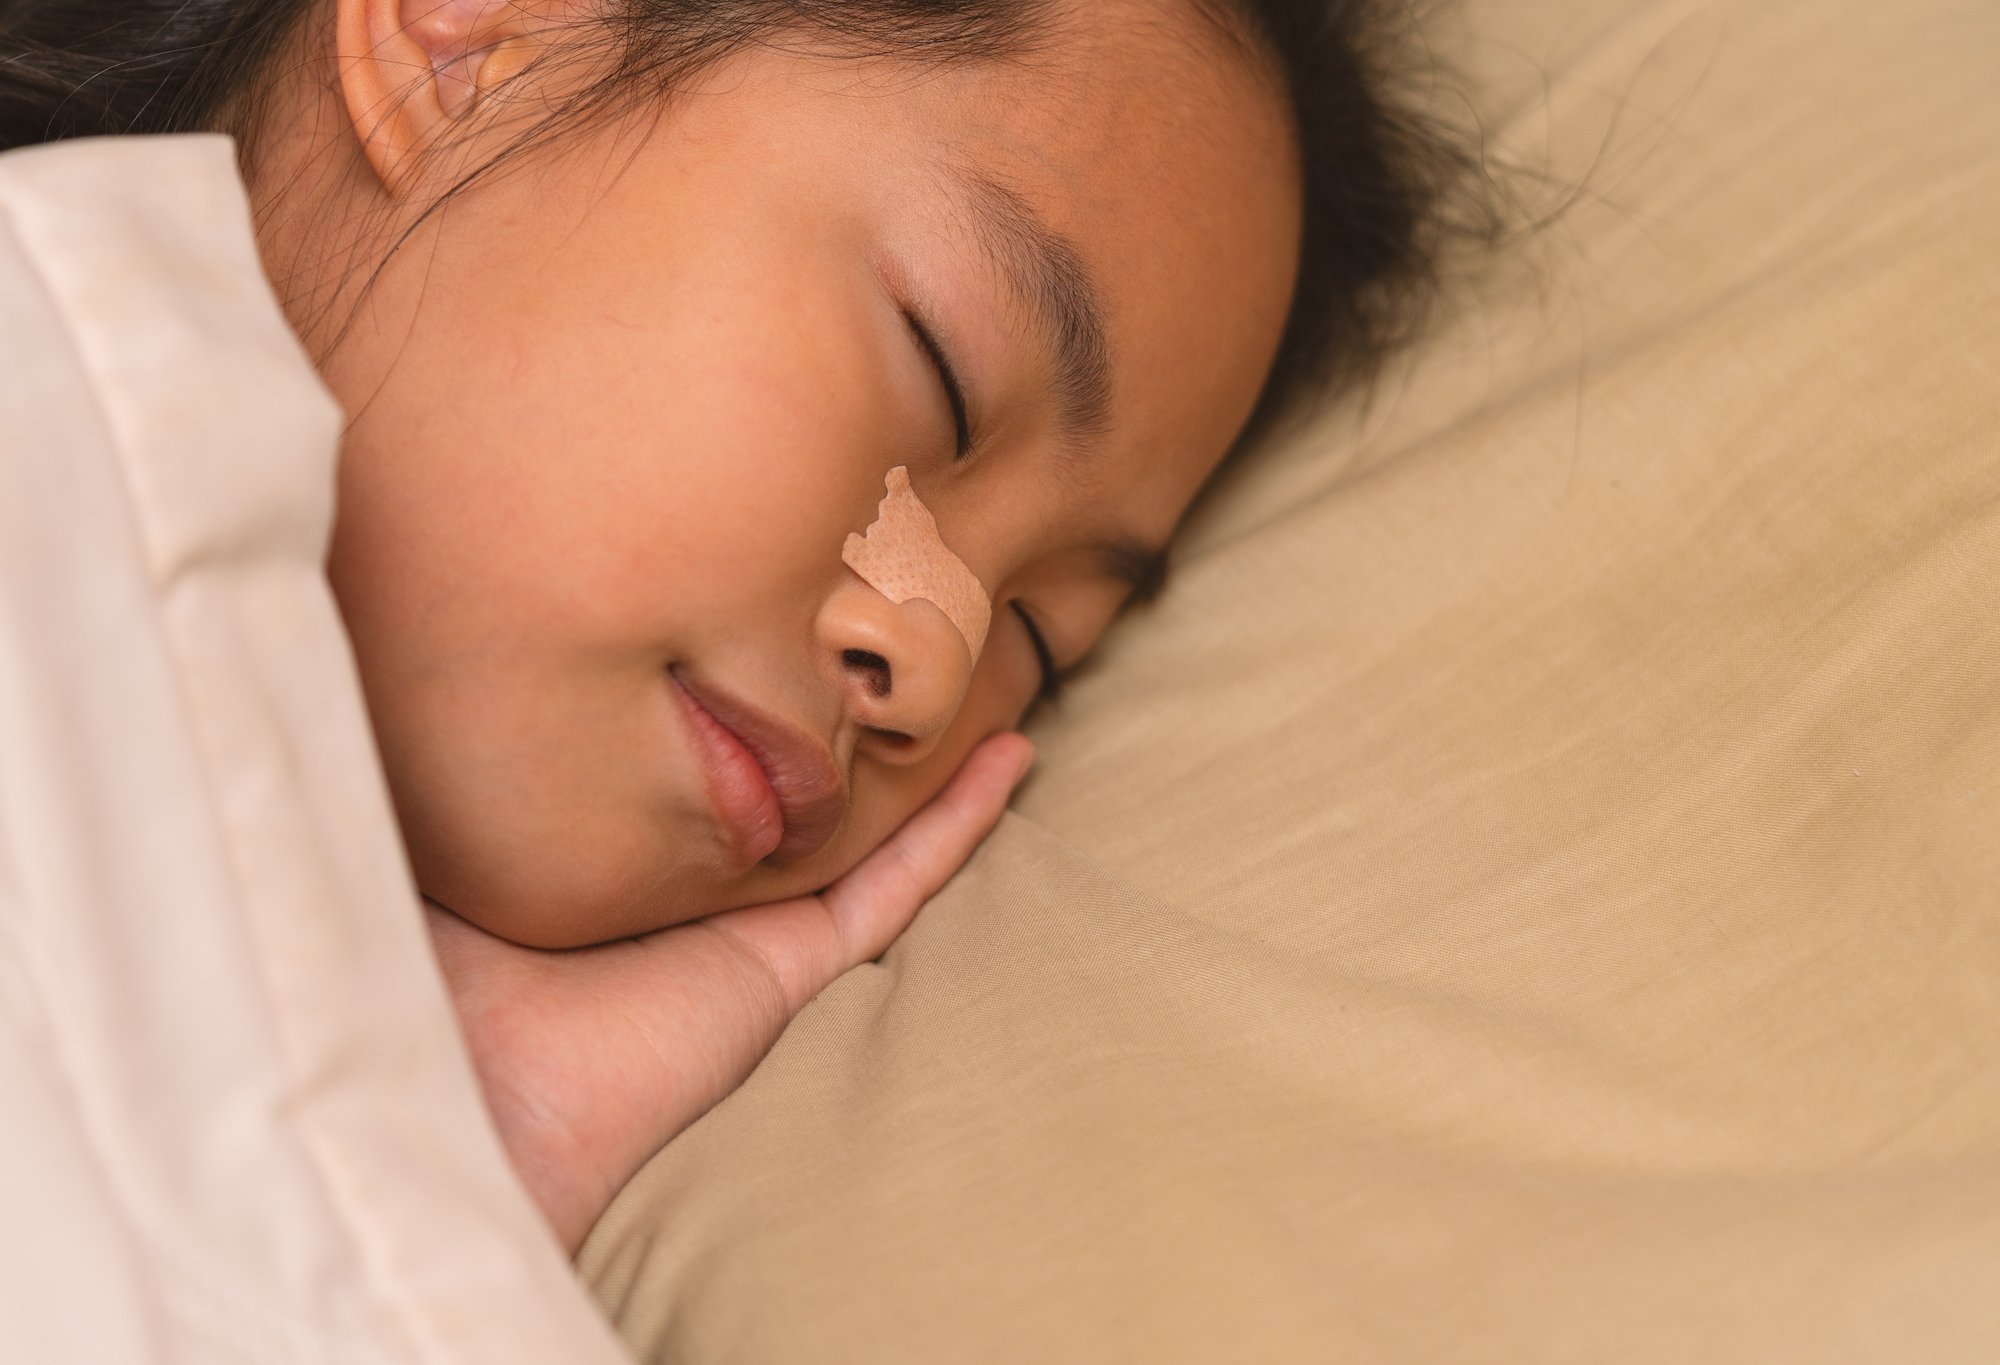 Mouth Tape Tapessnoringanti Children Kids Strips Sleeping Apnea